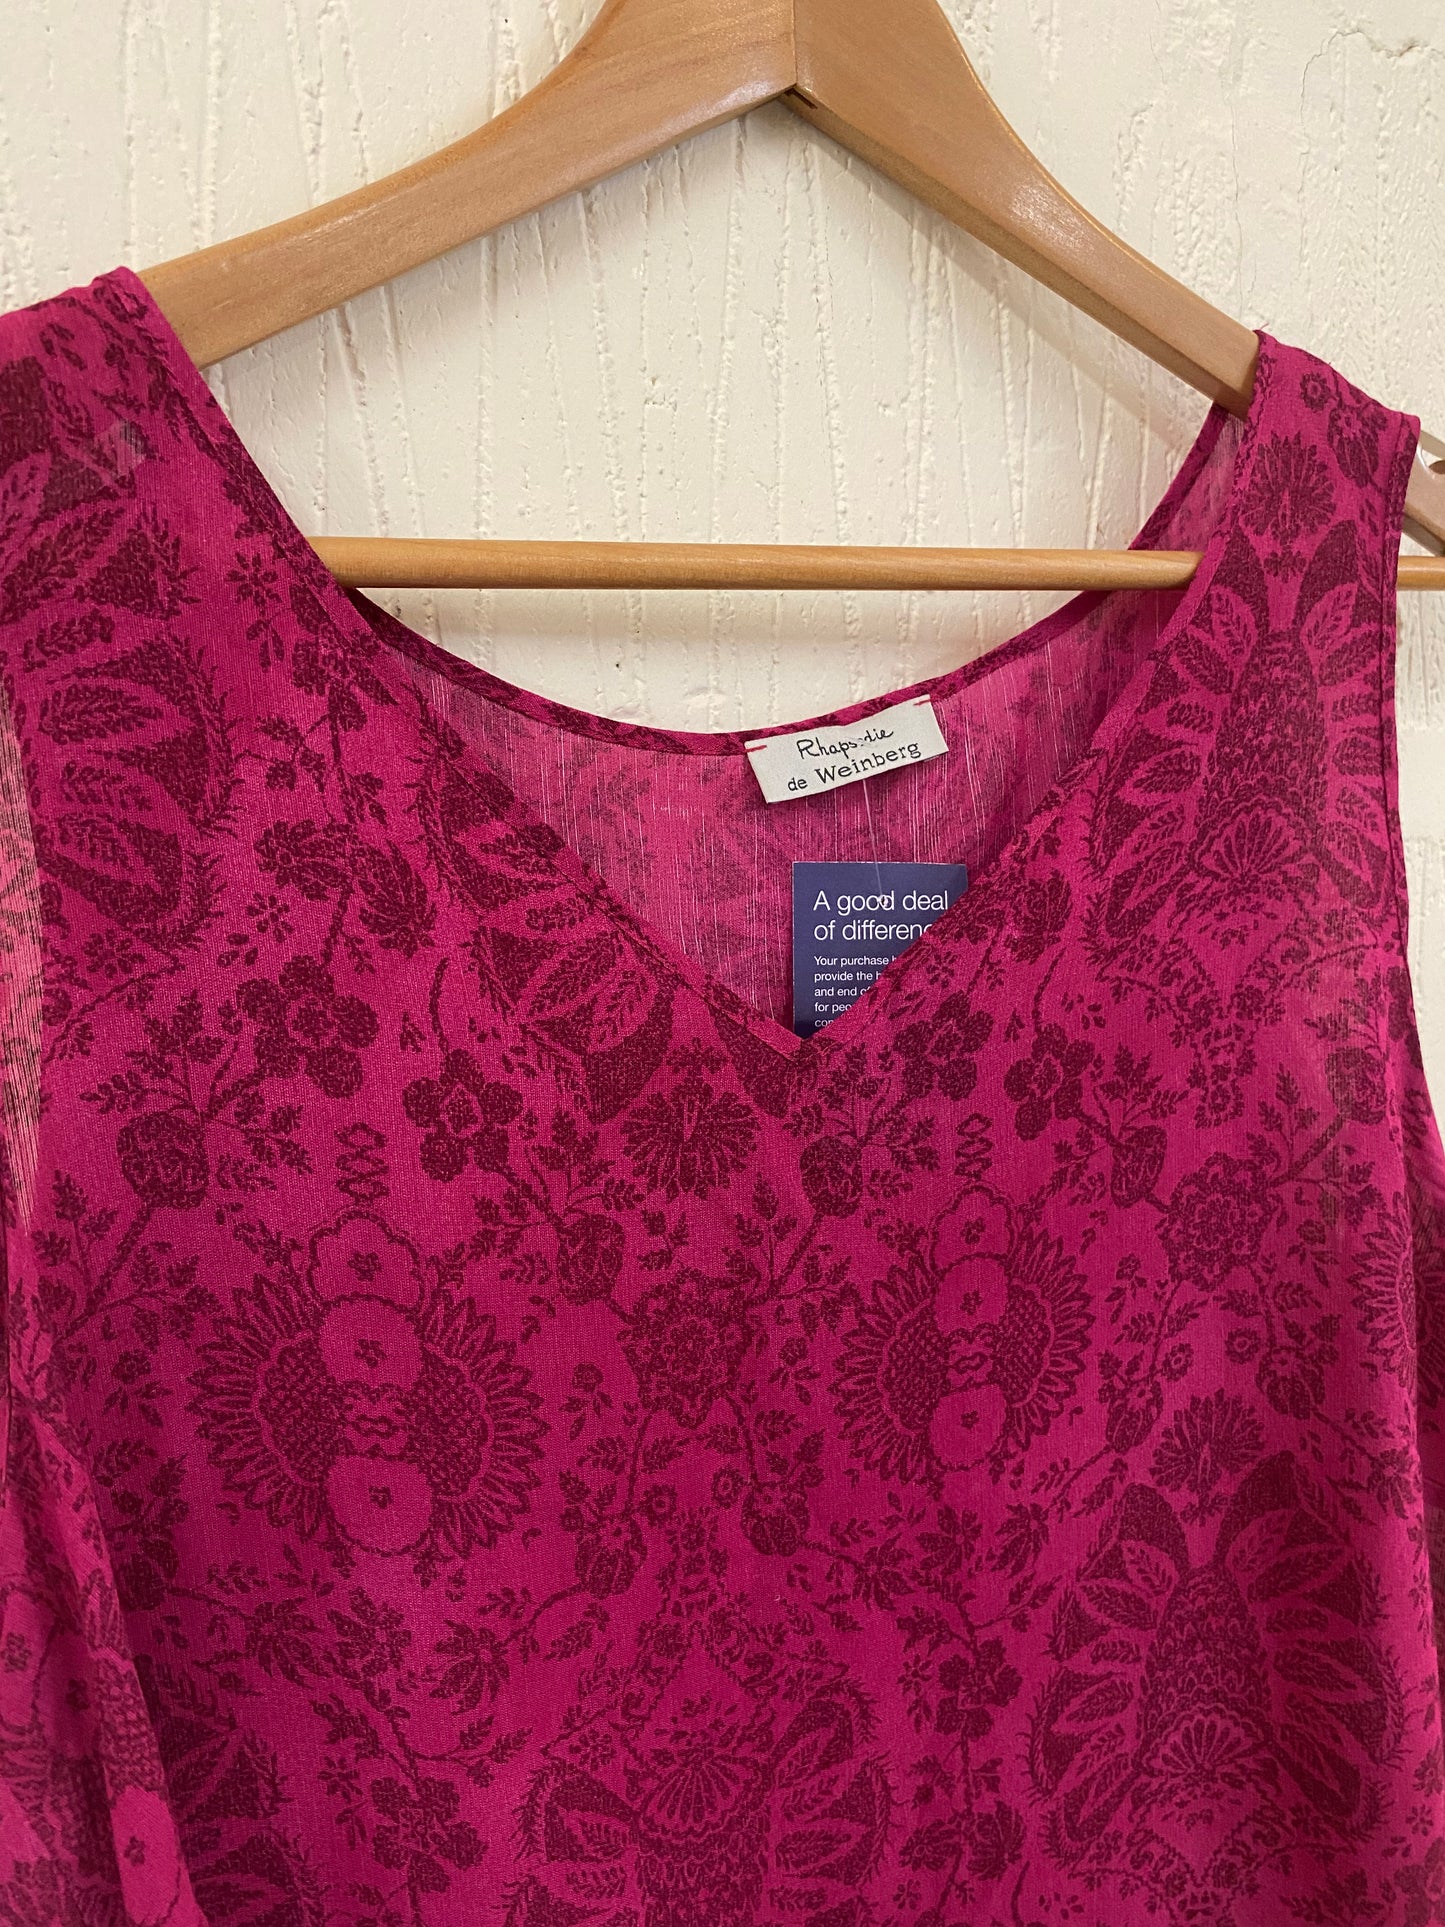 Pink Patterned Floral Printed Vest Top Size L